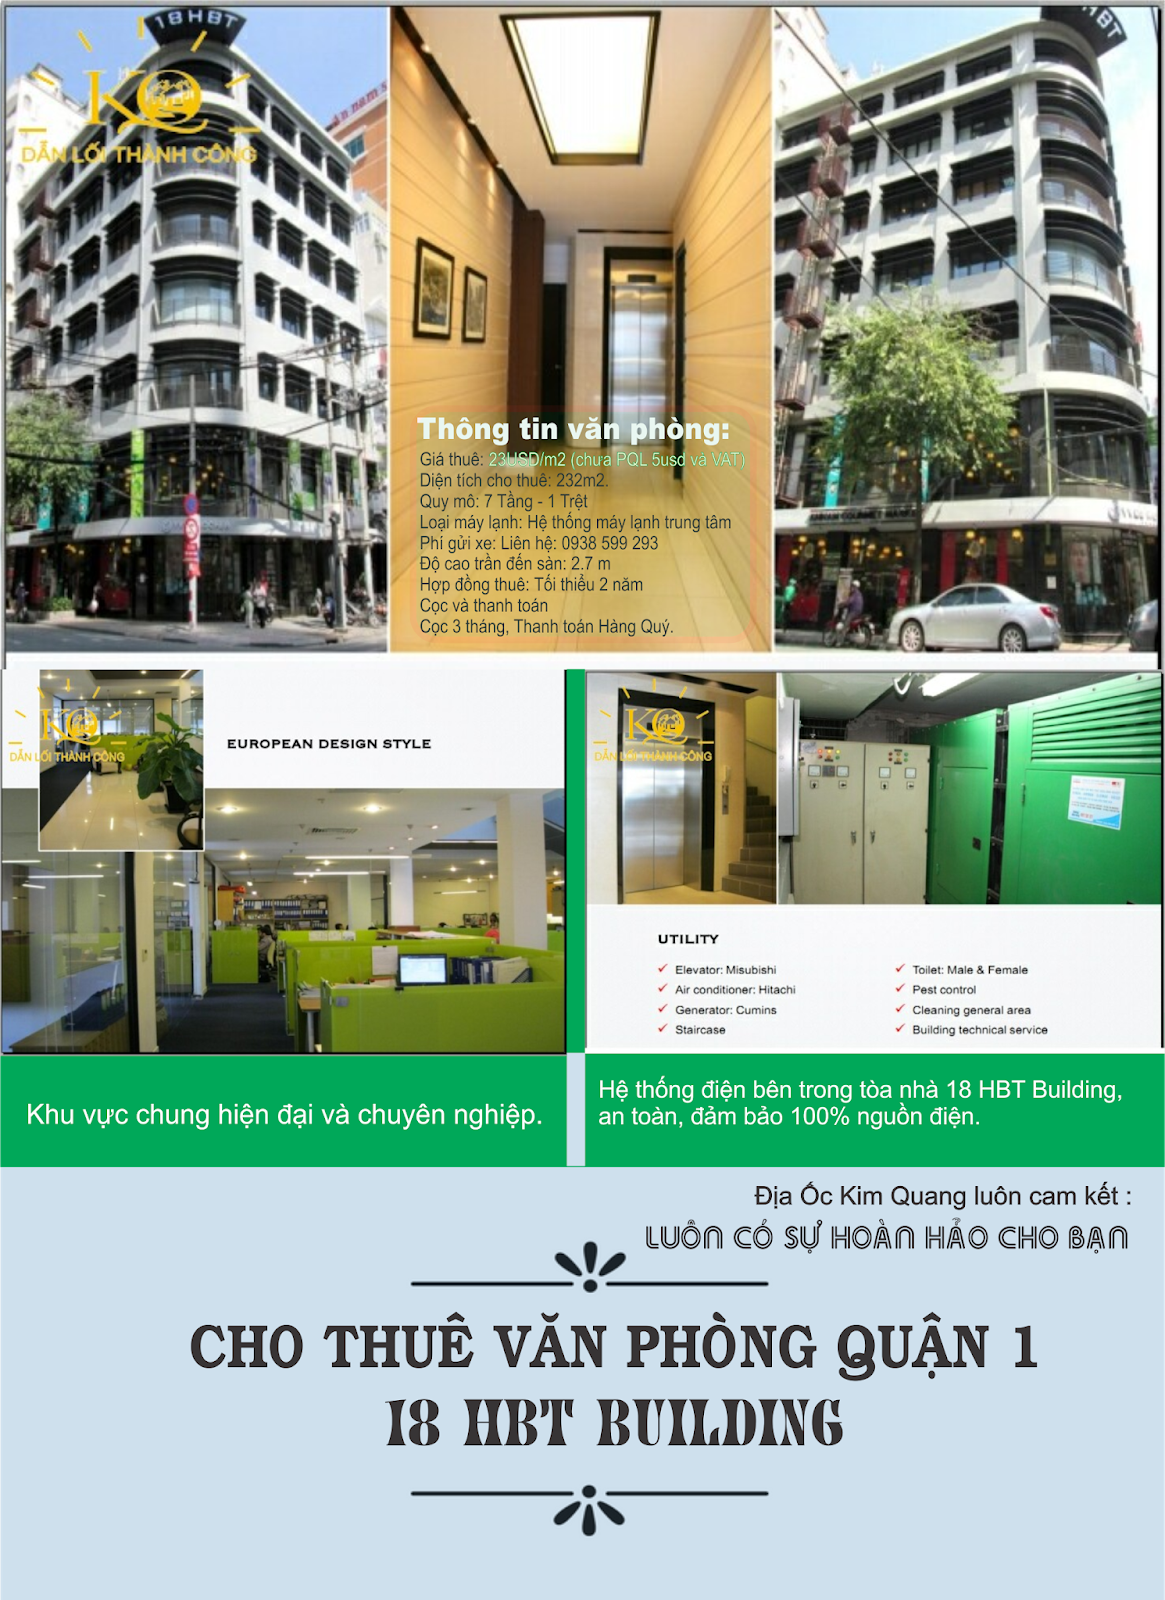 cho-thue-van-phong-quan-1-18-HBT-Building-dia-oc-kim-quang-1.png